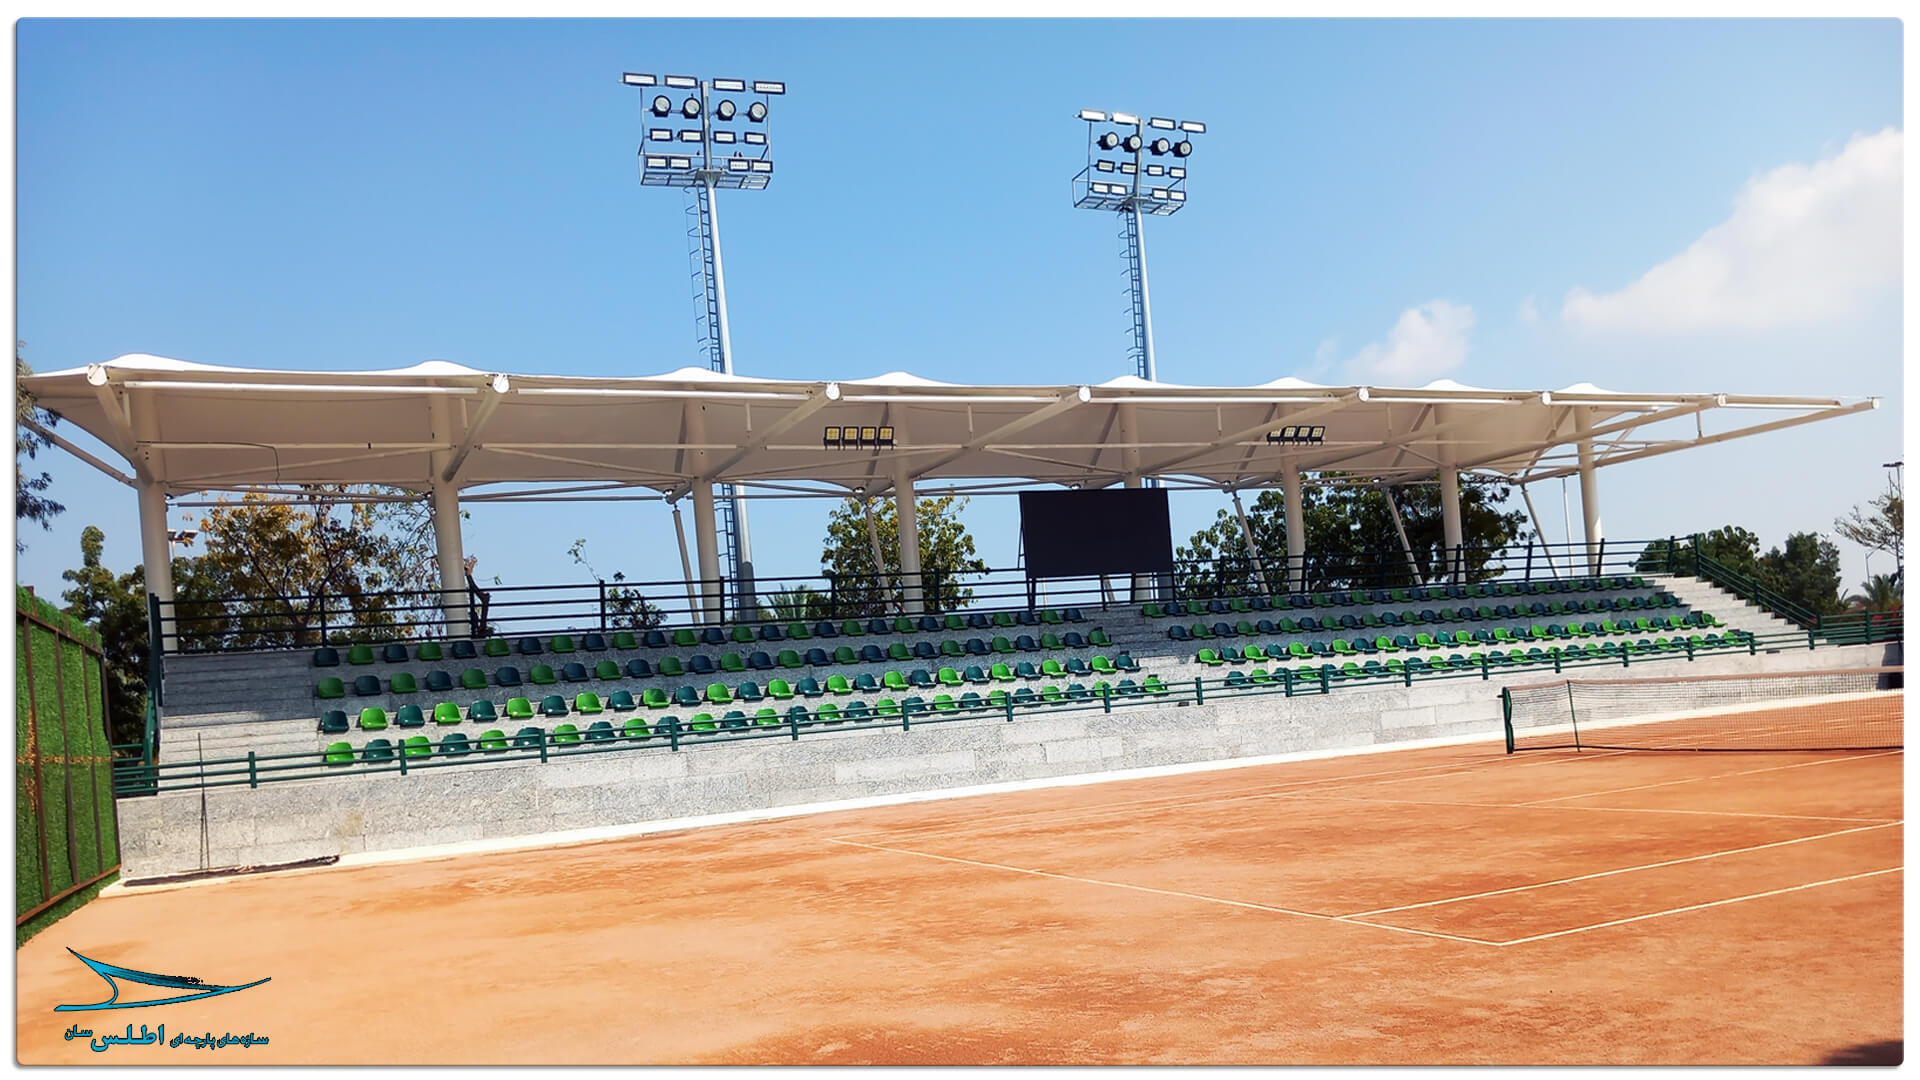 سقف پارچه ای استادیوم تنیس کیش | سازه پارچه ای اطلس سان